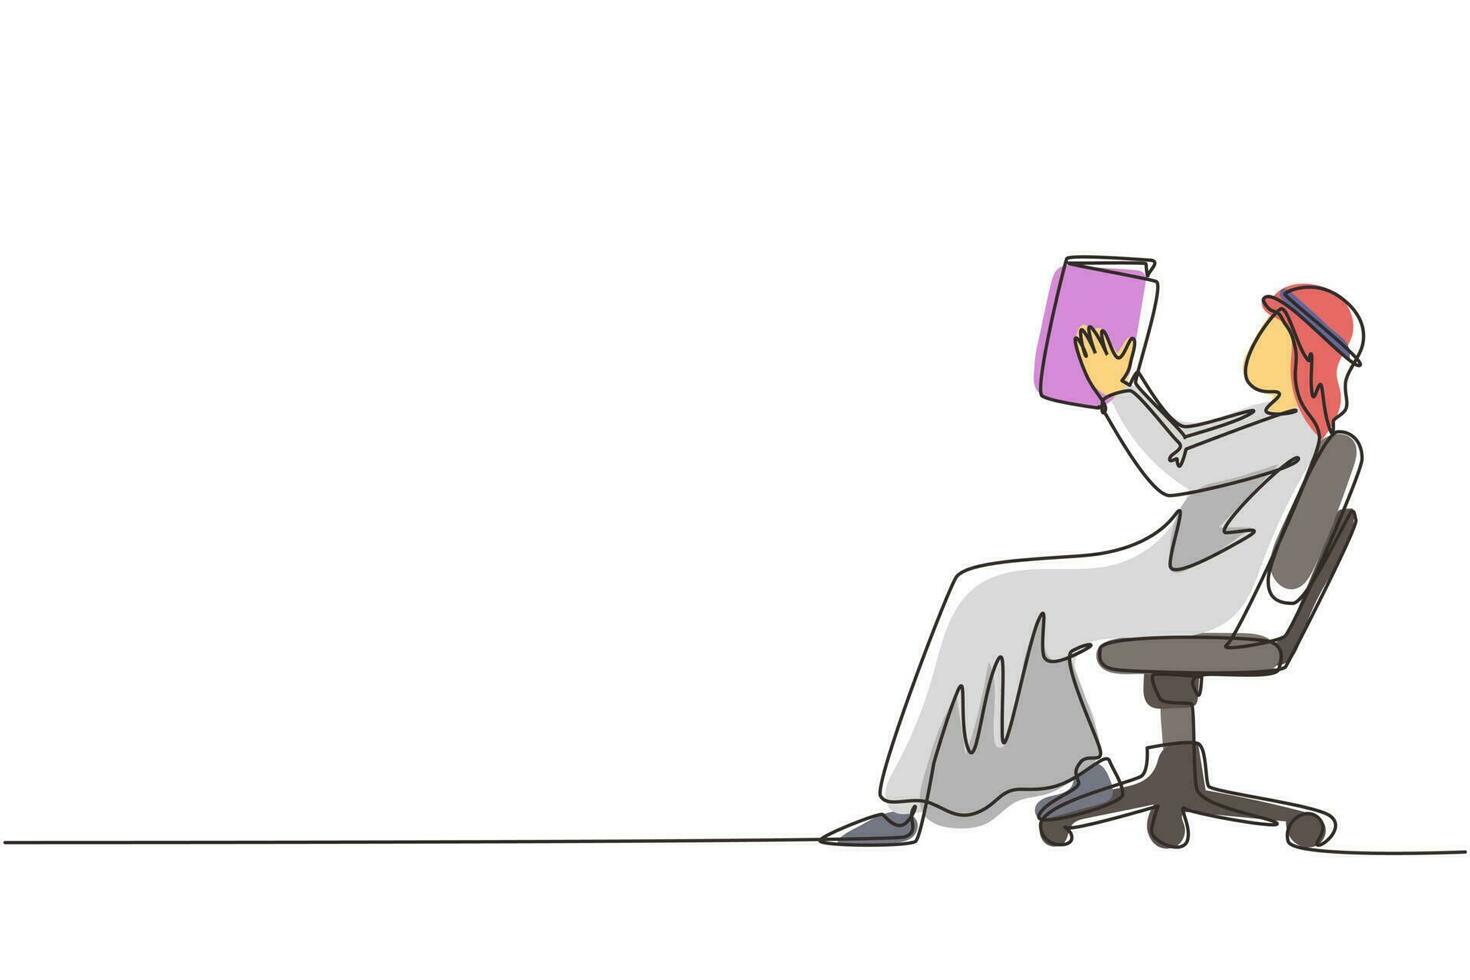 enkele een lijntekening Arabische man leest boek in de stoel. zijaanzicht van het leerproces van een jonge man. stijl van jongen die vrije tijd doorbrengt door literatuur te lezen. ononderbroken lijntekening ontwerp vector